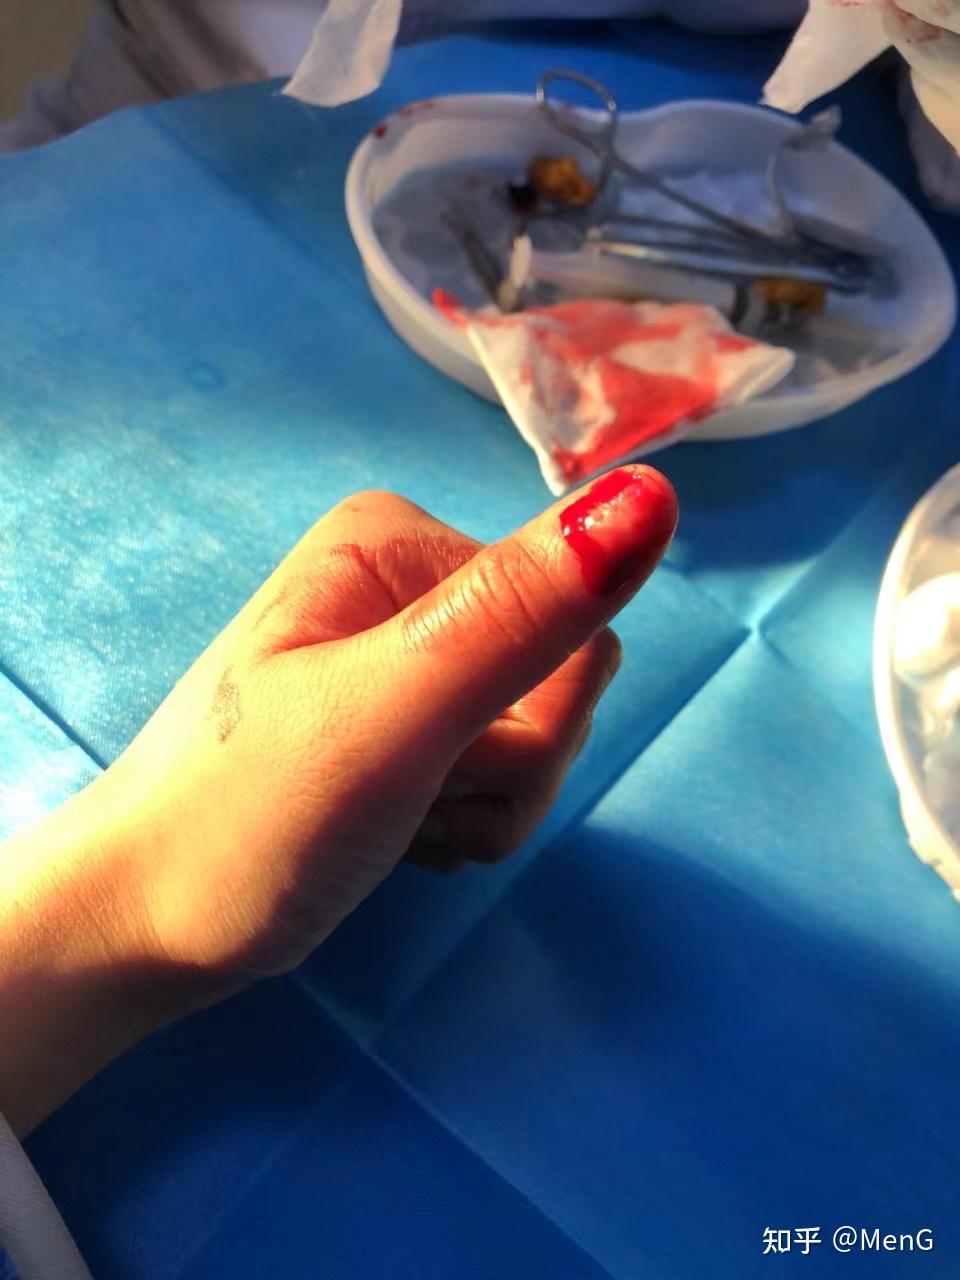 手指被夹指甲淤血图片